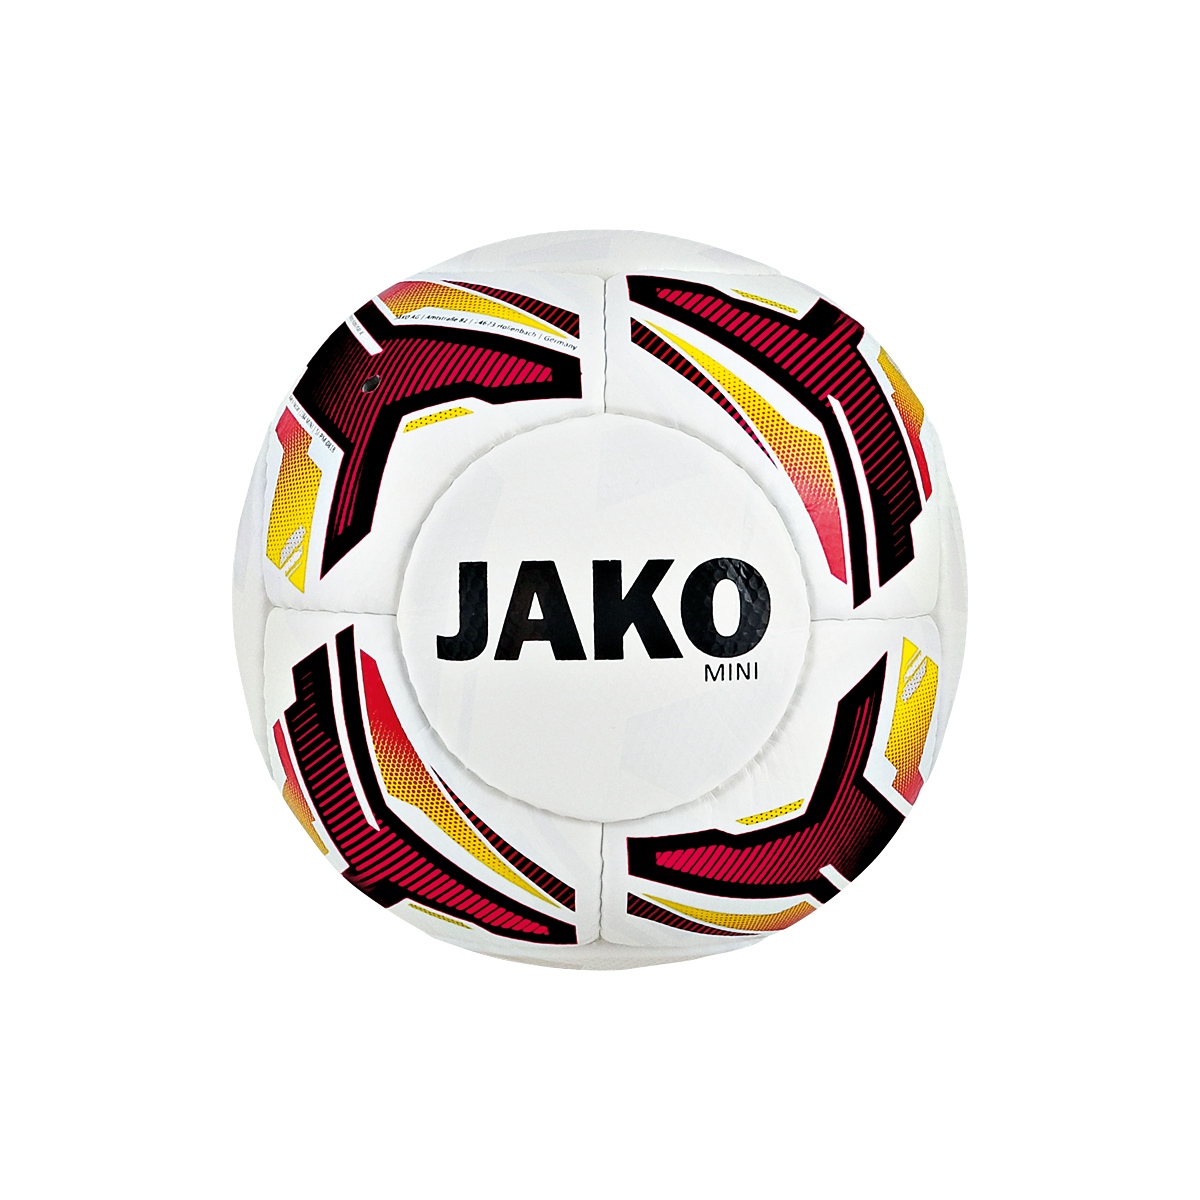 JAKO Miniball-14 Panel Handgenäht Miniball 